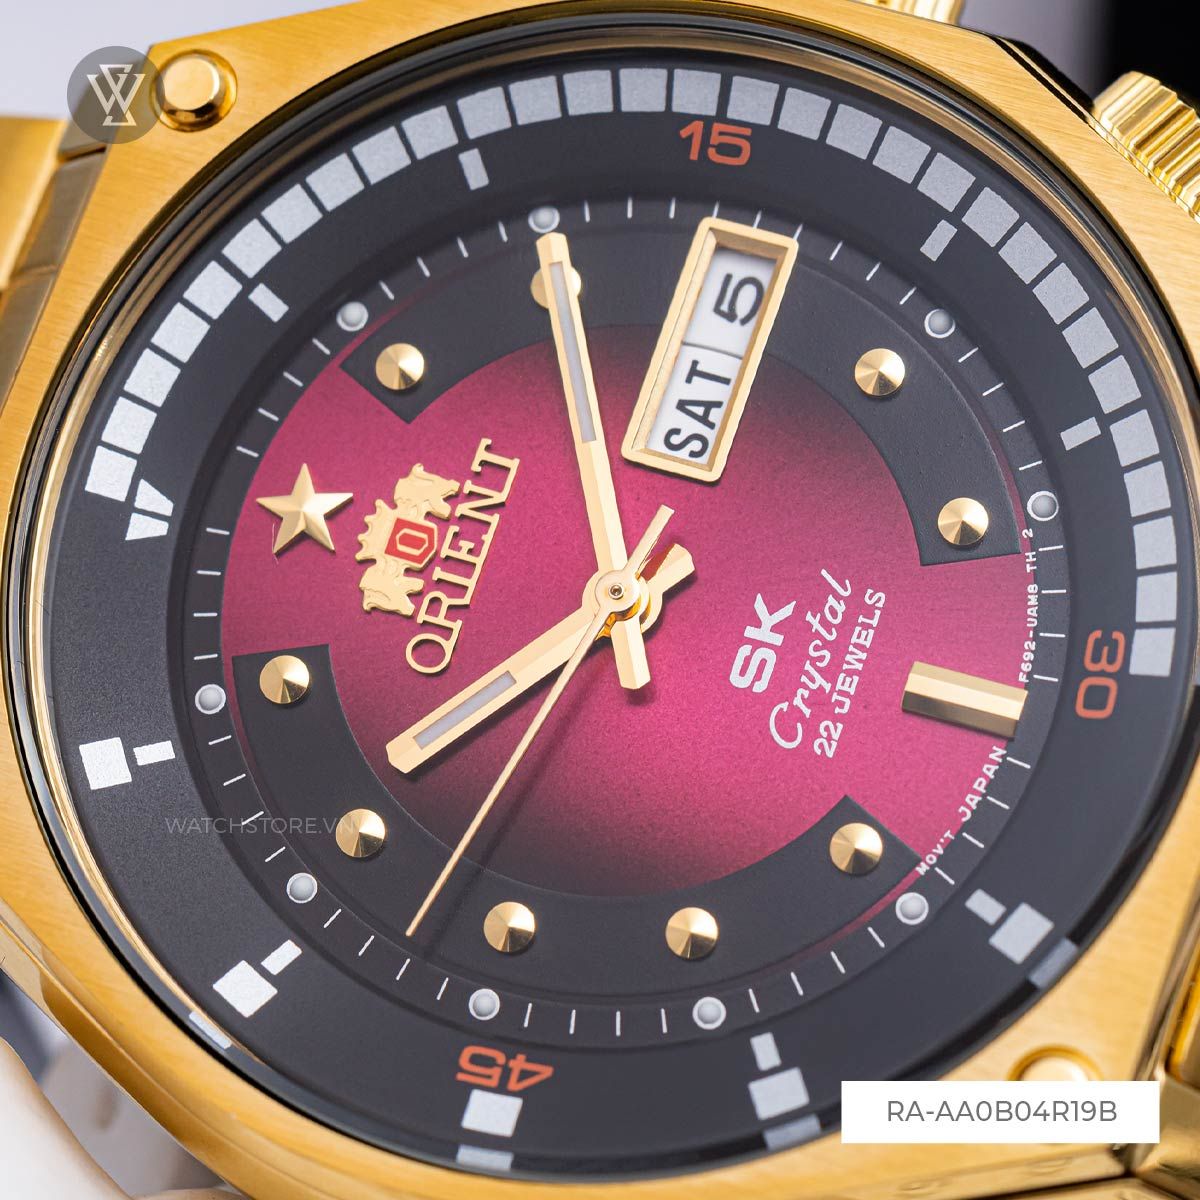 Siêu phẩm Orient SK Vietnam Special Edition RA-AA0B04R19B đã có mặt tại Watches shop - Ảnh 6